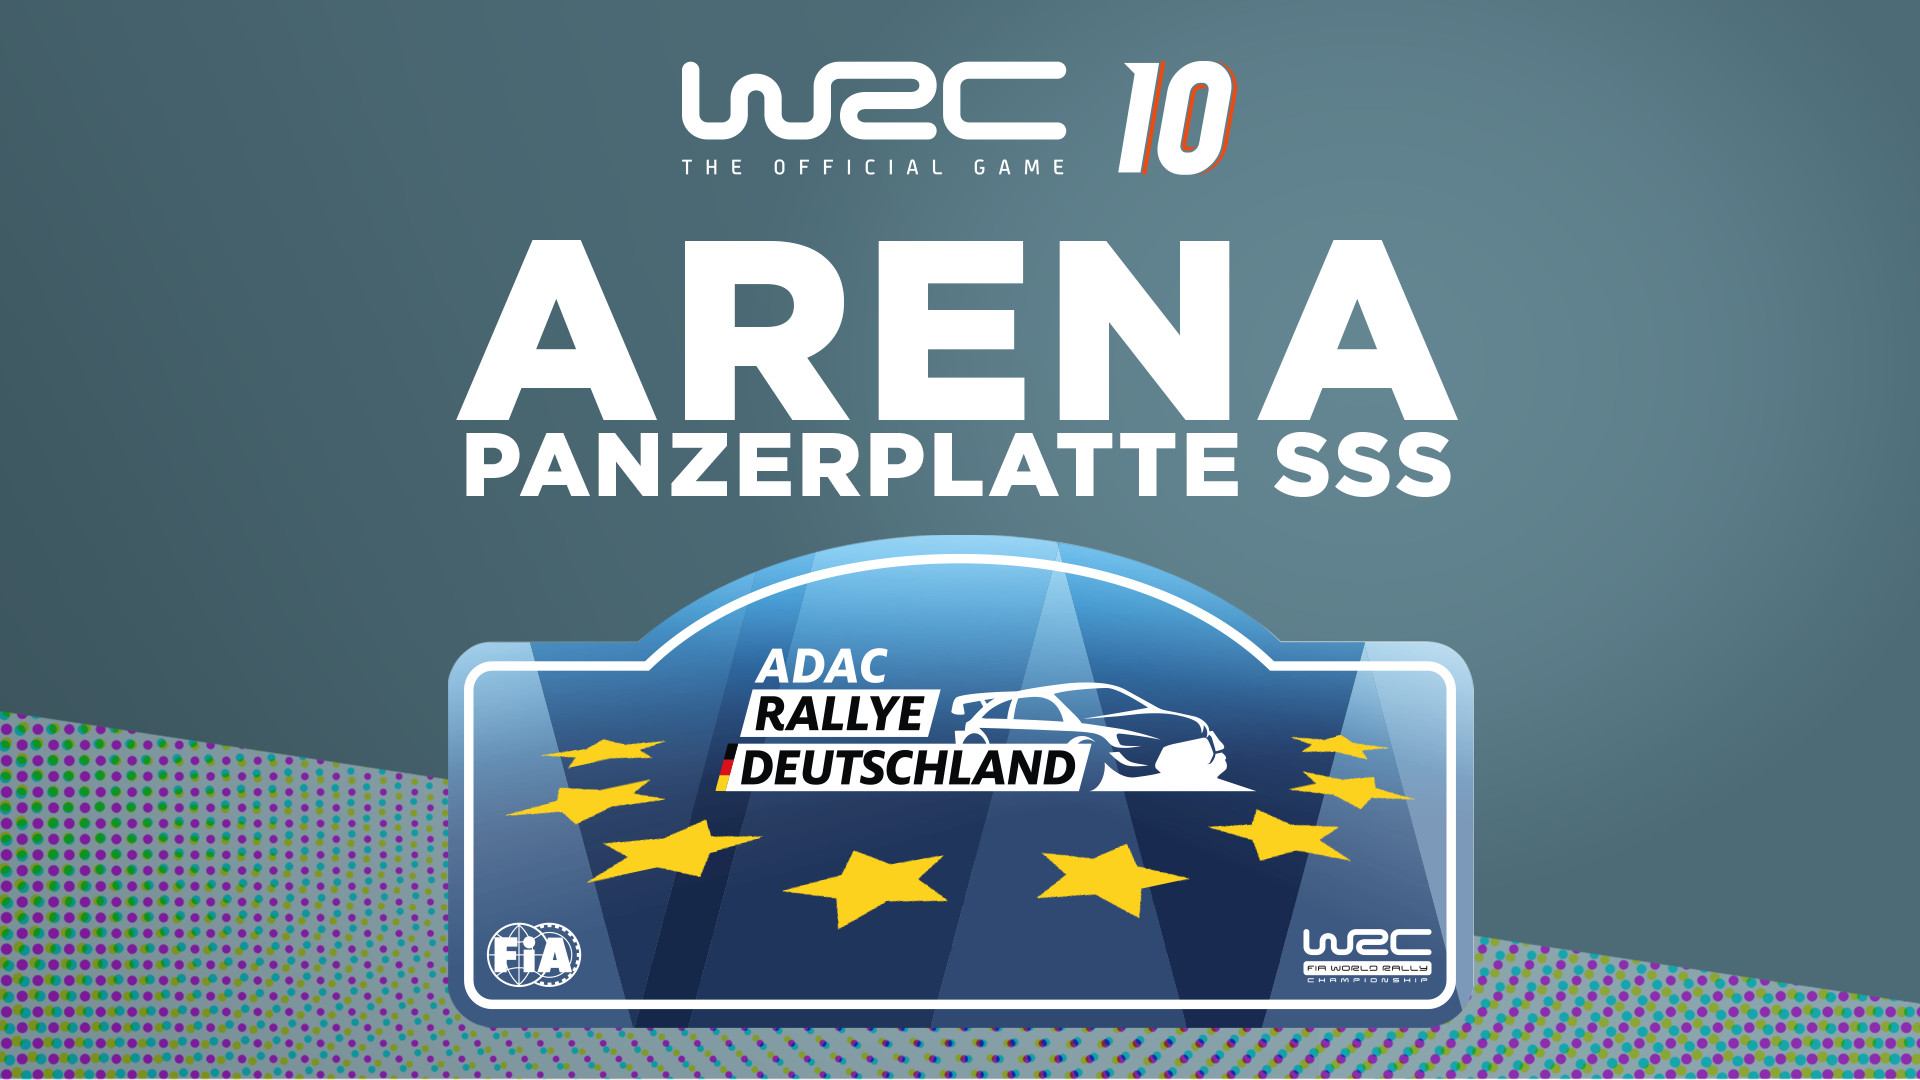 WRC 10 - Arena Panzerplatte SSS DLC Steam CD Key [$ 4.51]